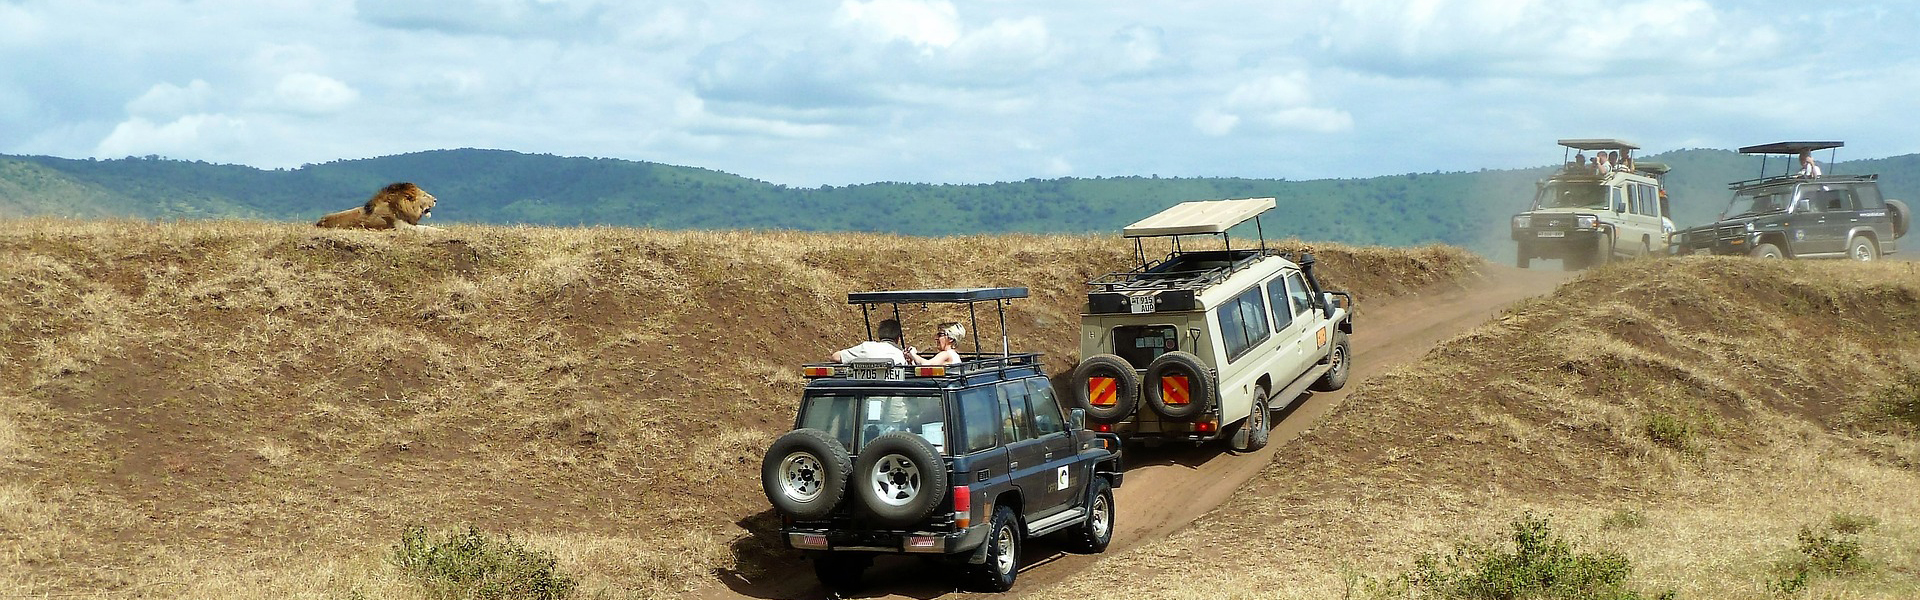 Safari i Afrika giver oplevelser for livet